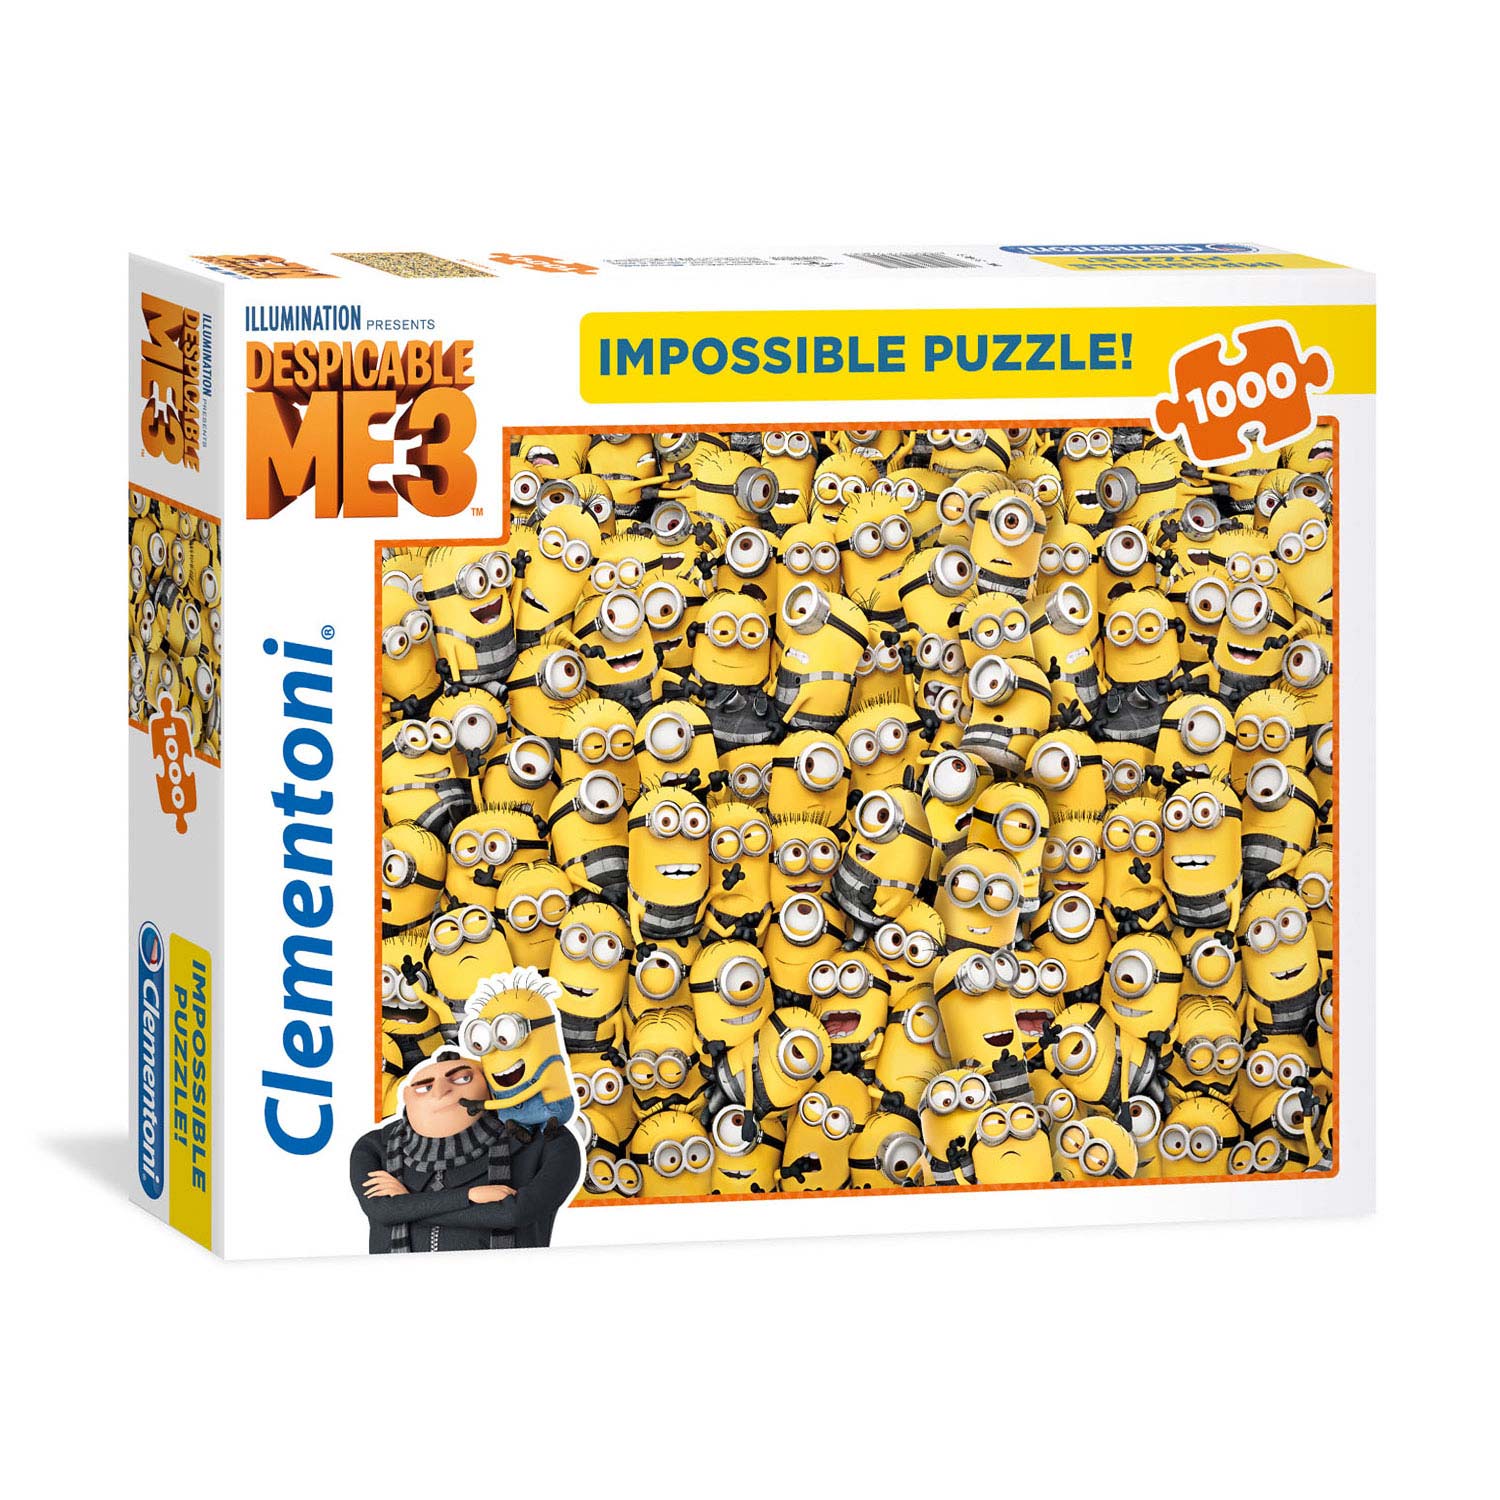 Clementoni Frozen 1000 Piece Impossible Puzzle